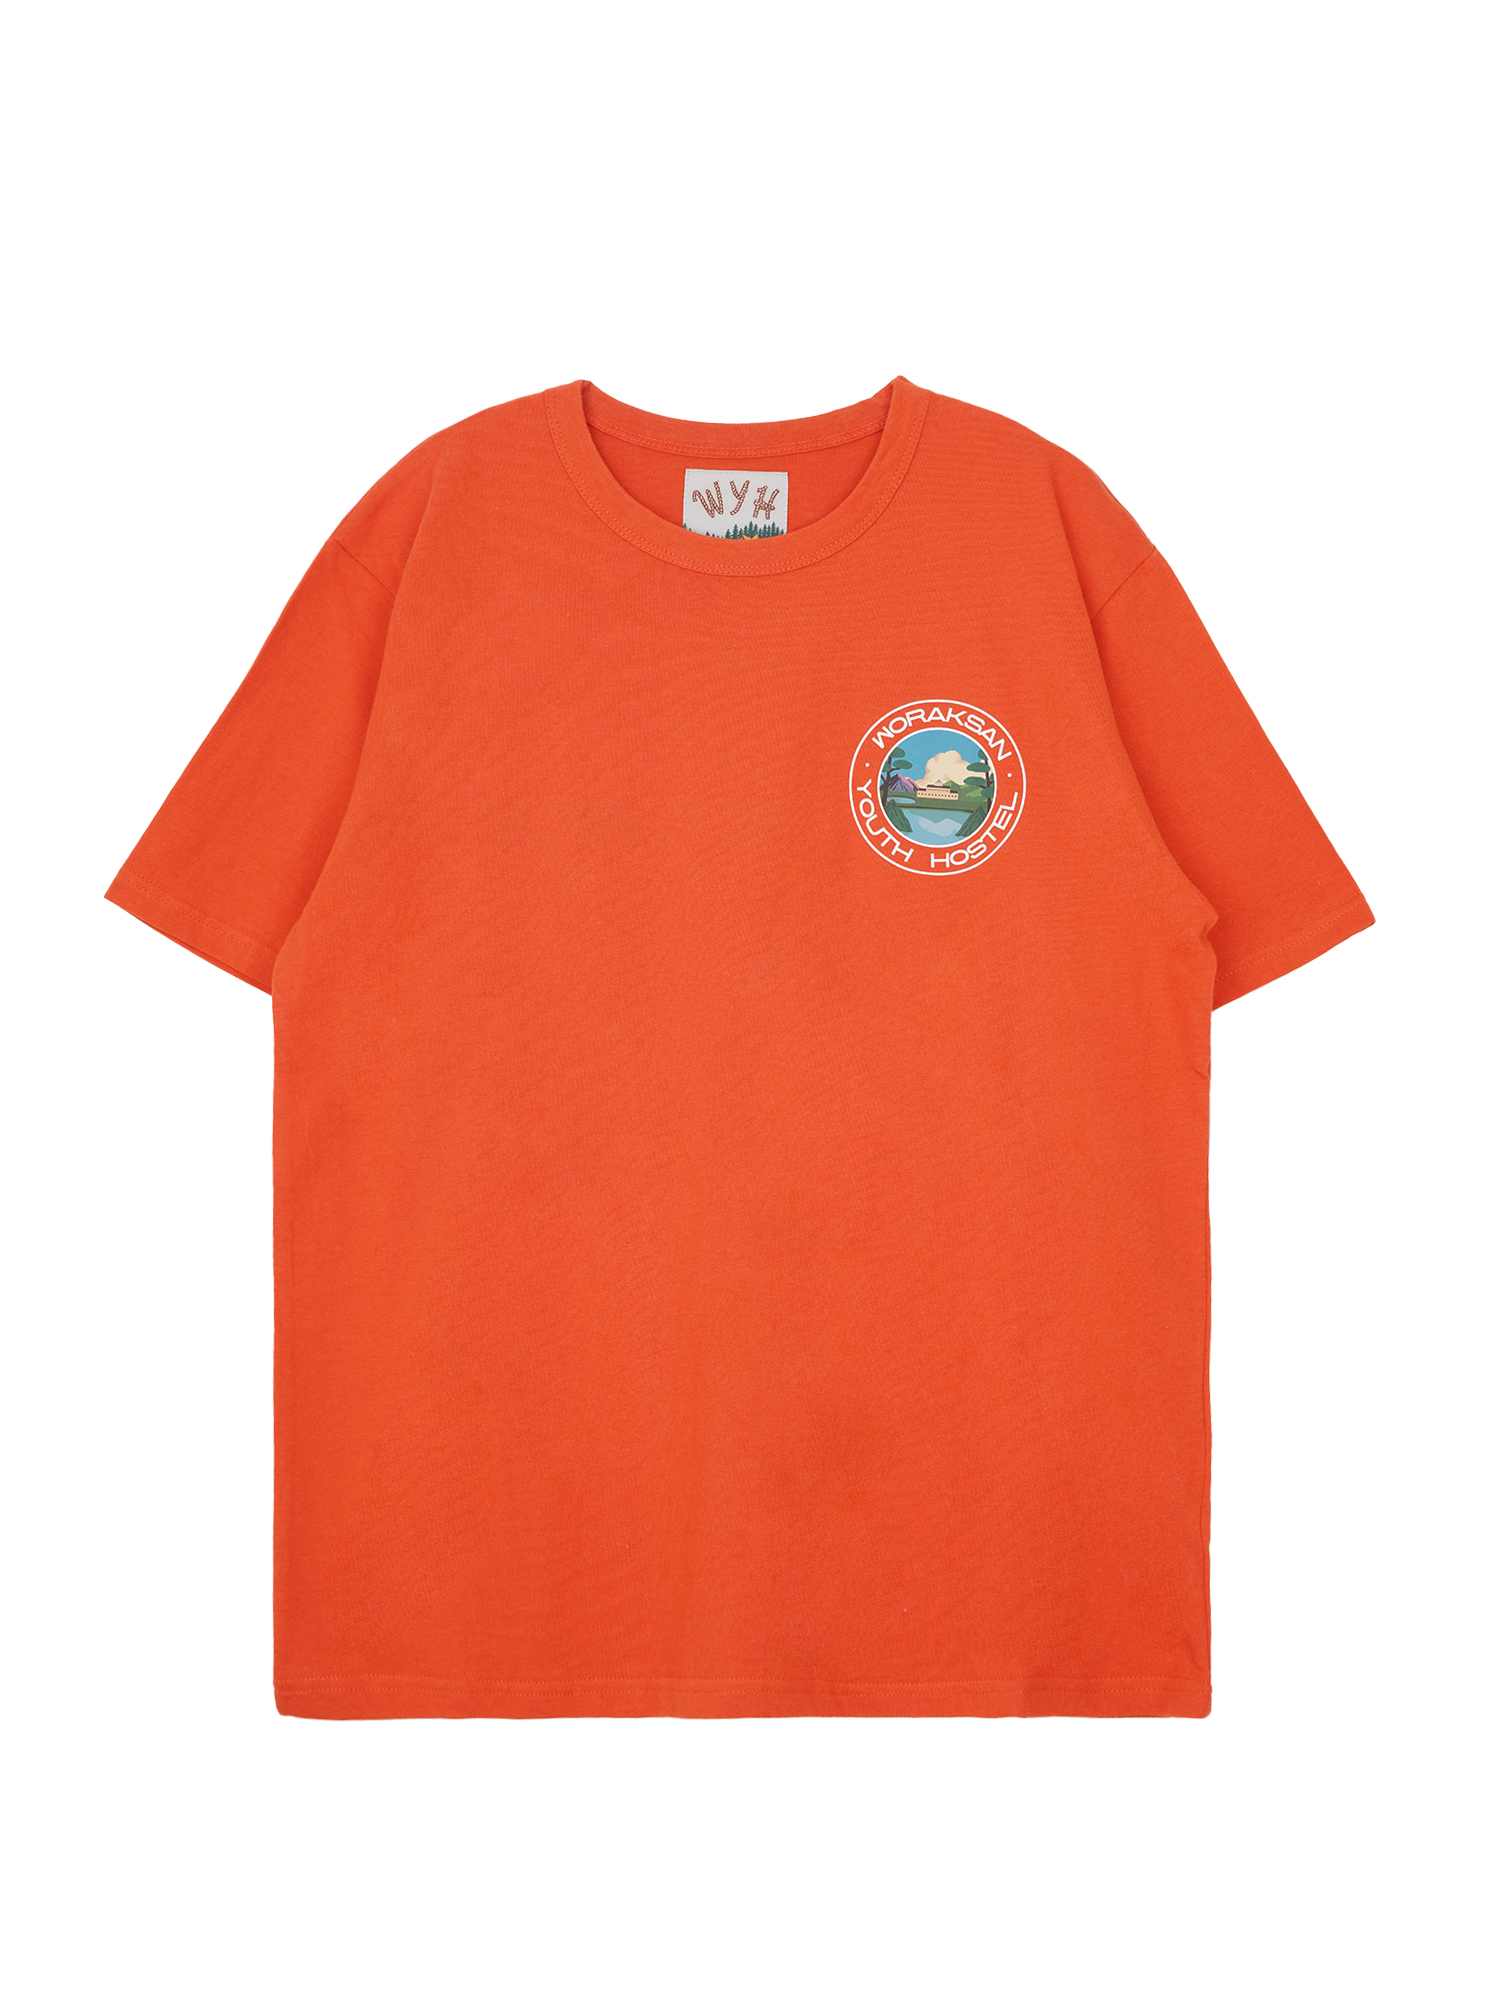 Woraksan Crew T-shirt - Orange